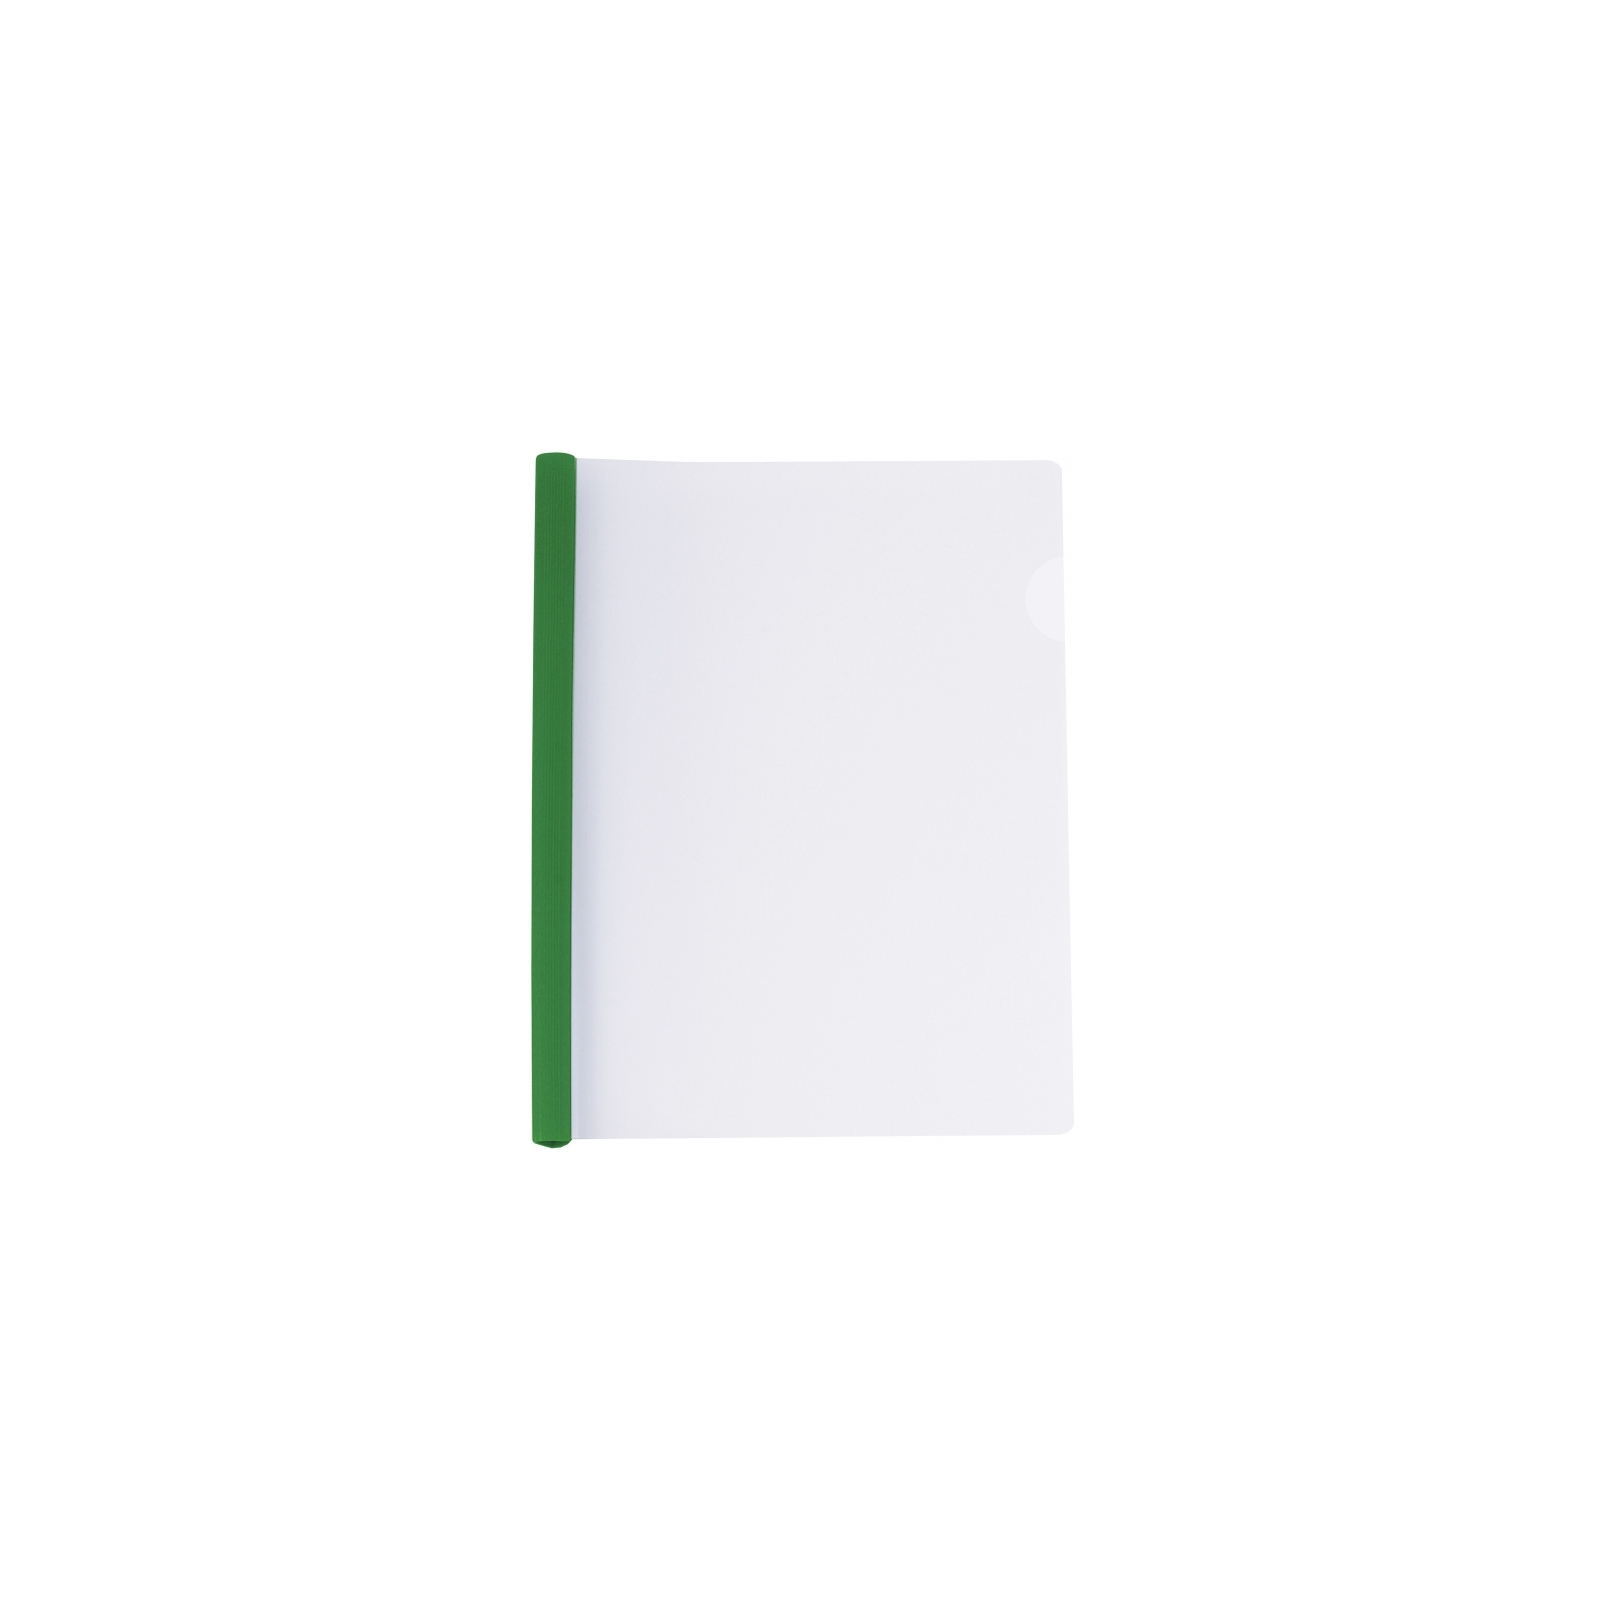 Папка-скоросшиватель Economix А4 с планкой-зажимом 15 мм (2-95 листов), зеленая (E31211-04)